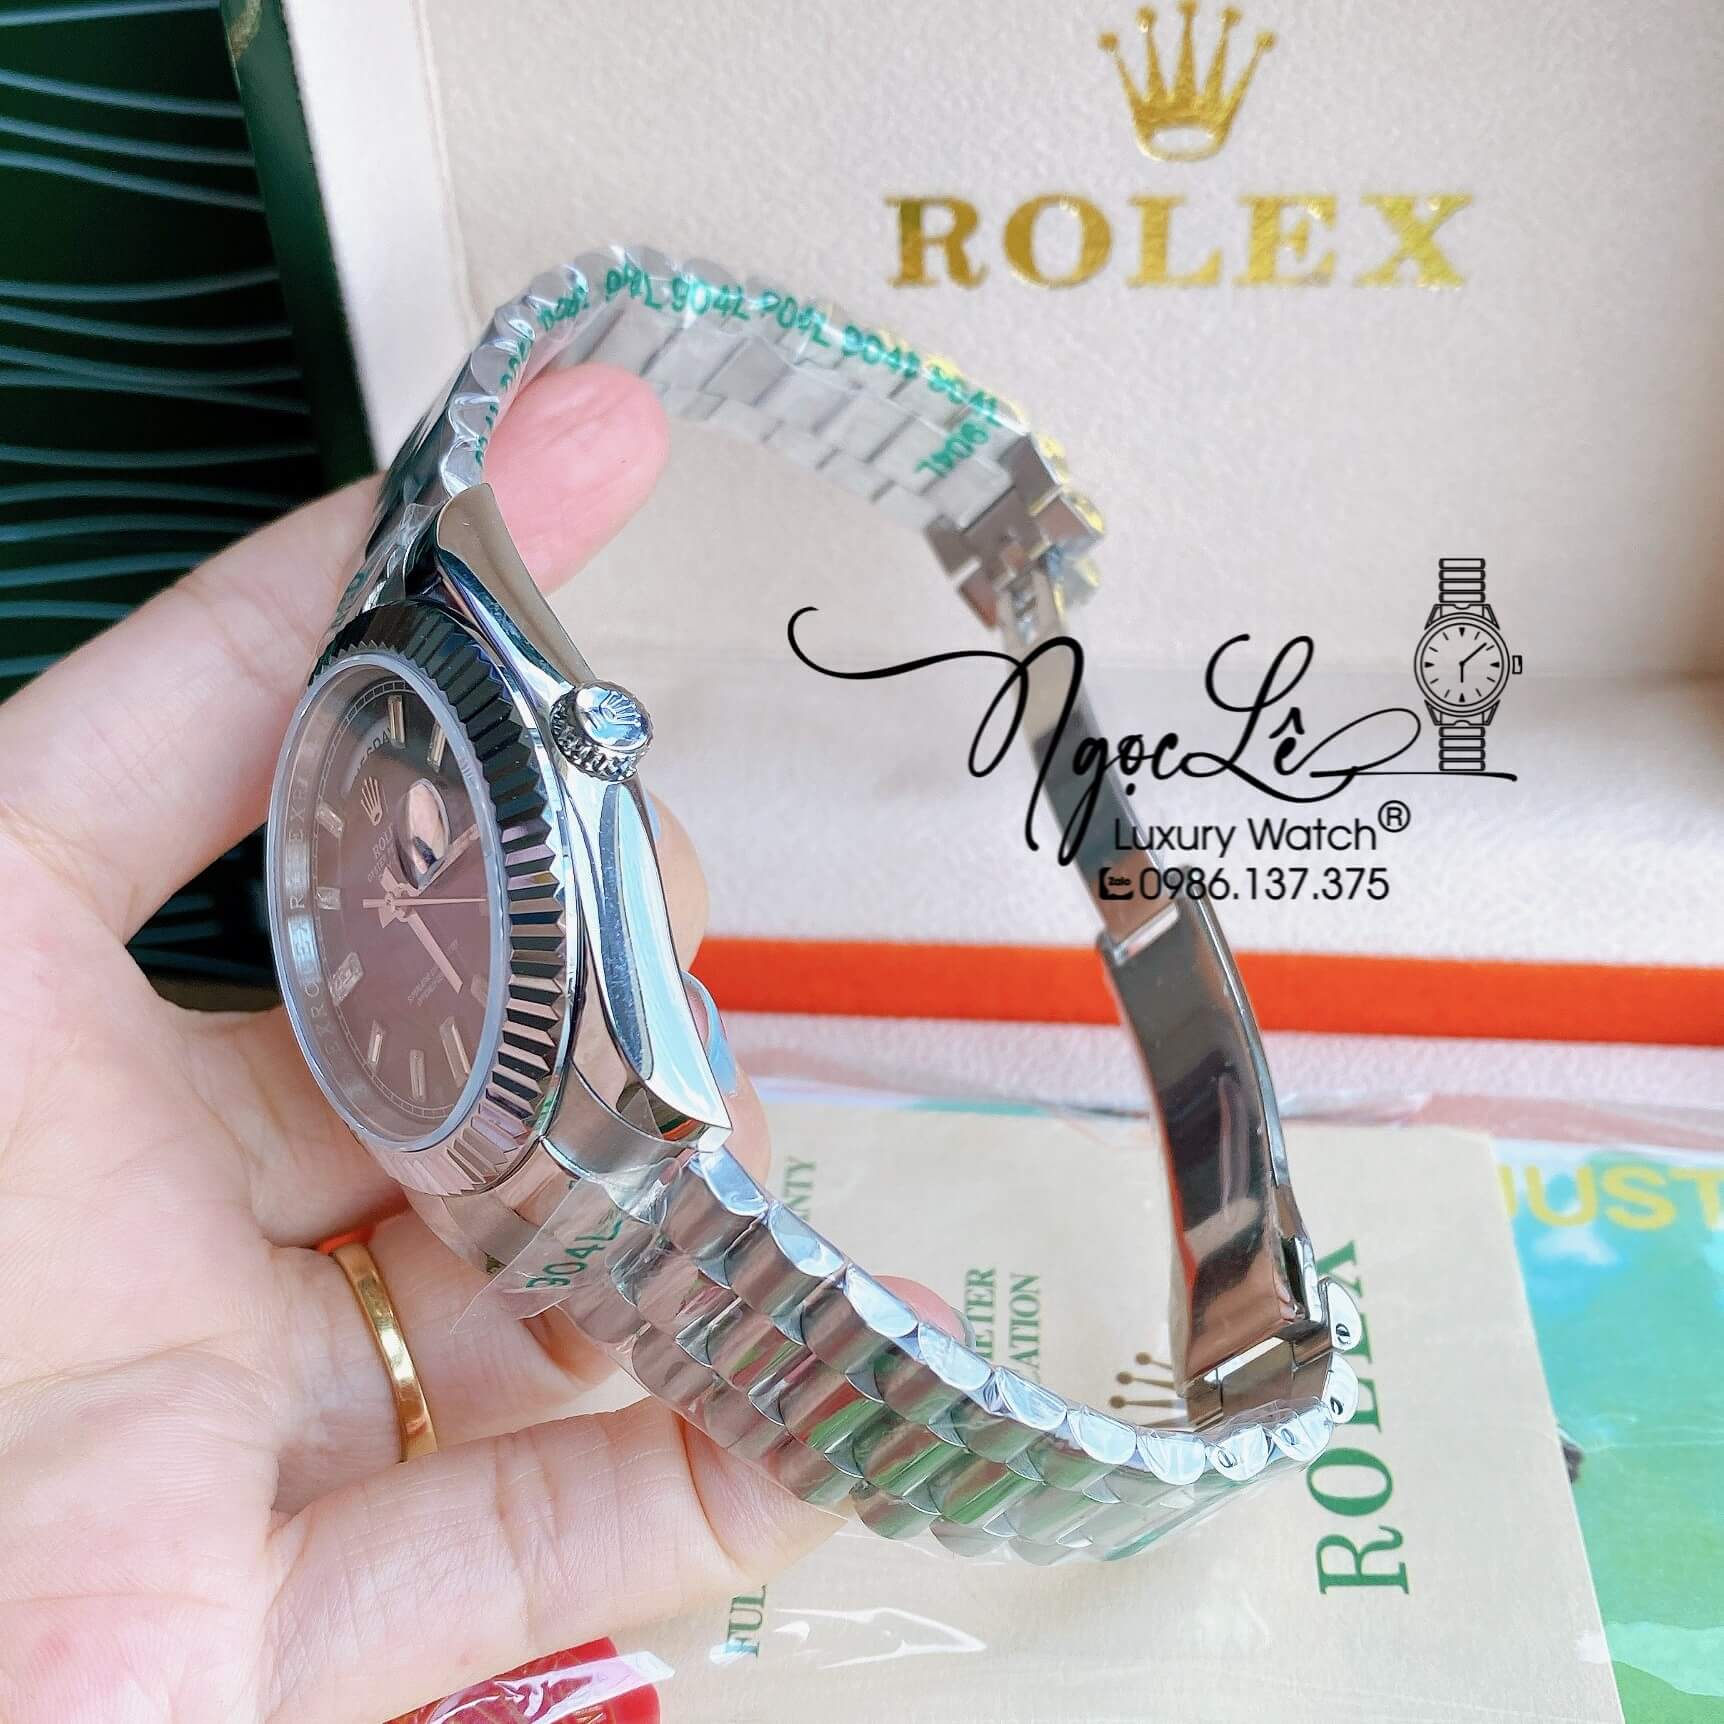 Đồng Hồ Rolex Day-Date Automatic Nam Dây Kim Loại Bạc Mặt Đen Niềng Khía Size 41mm